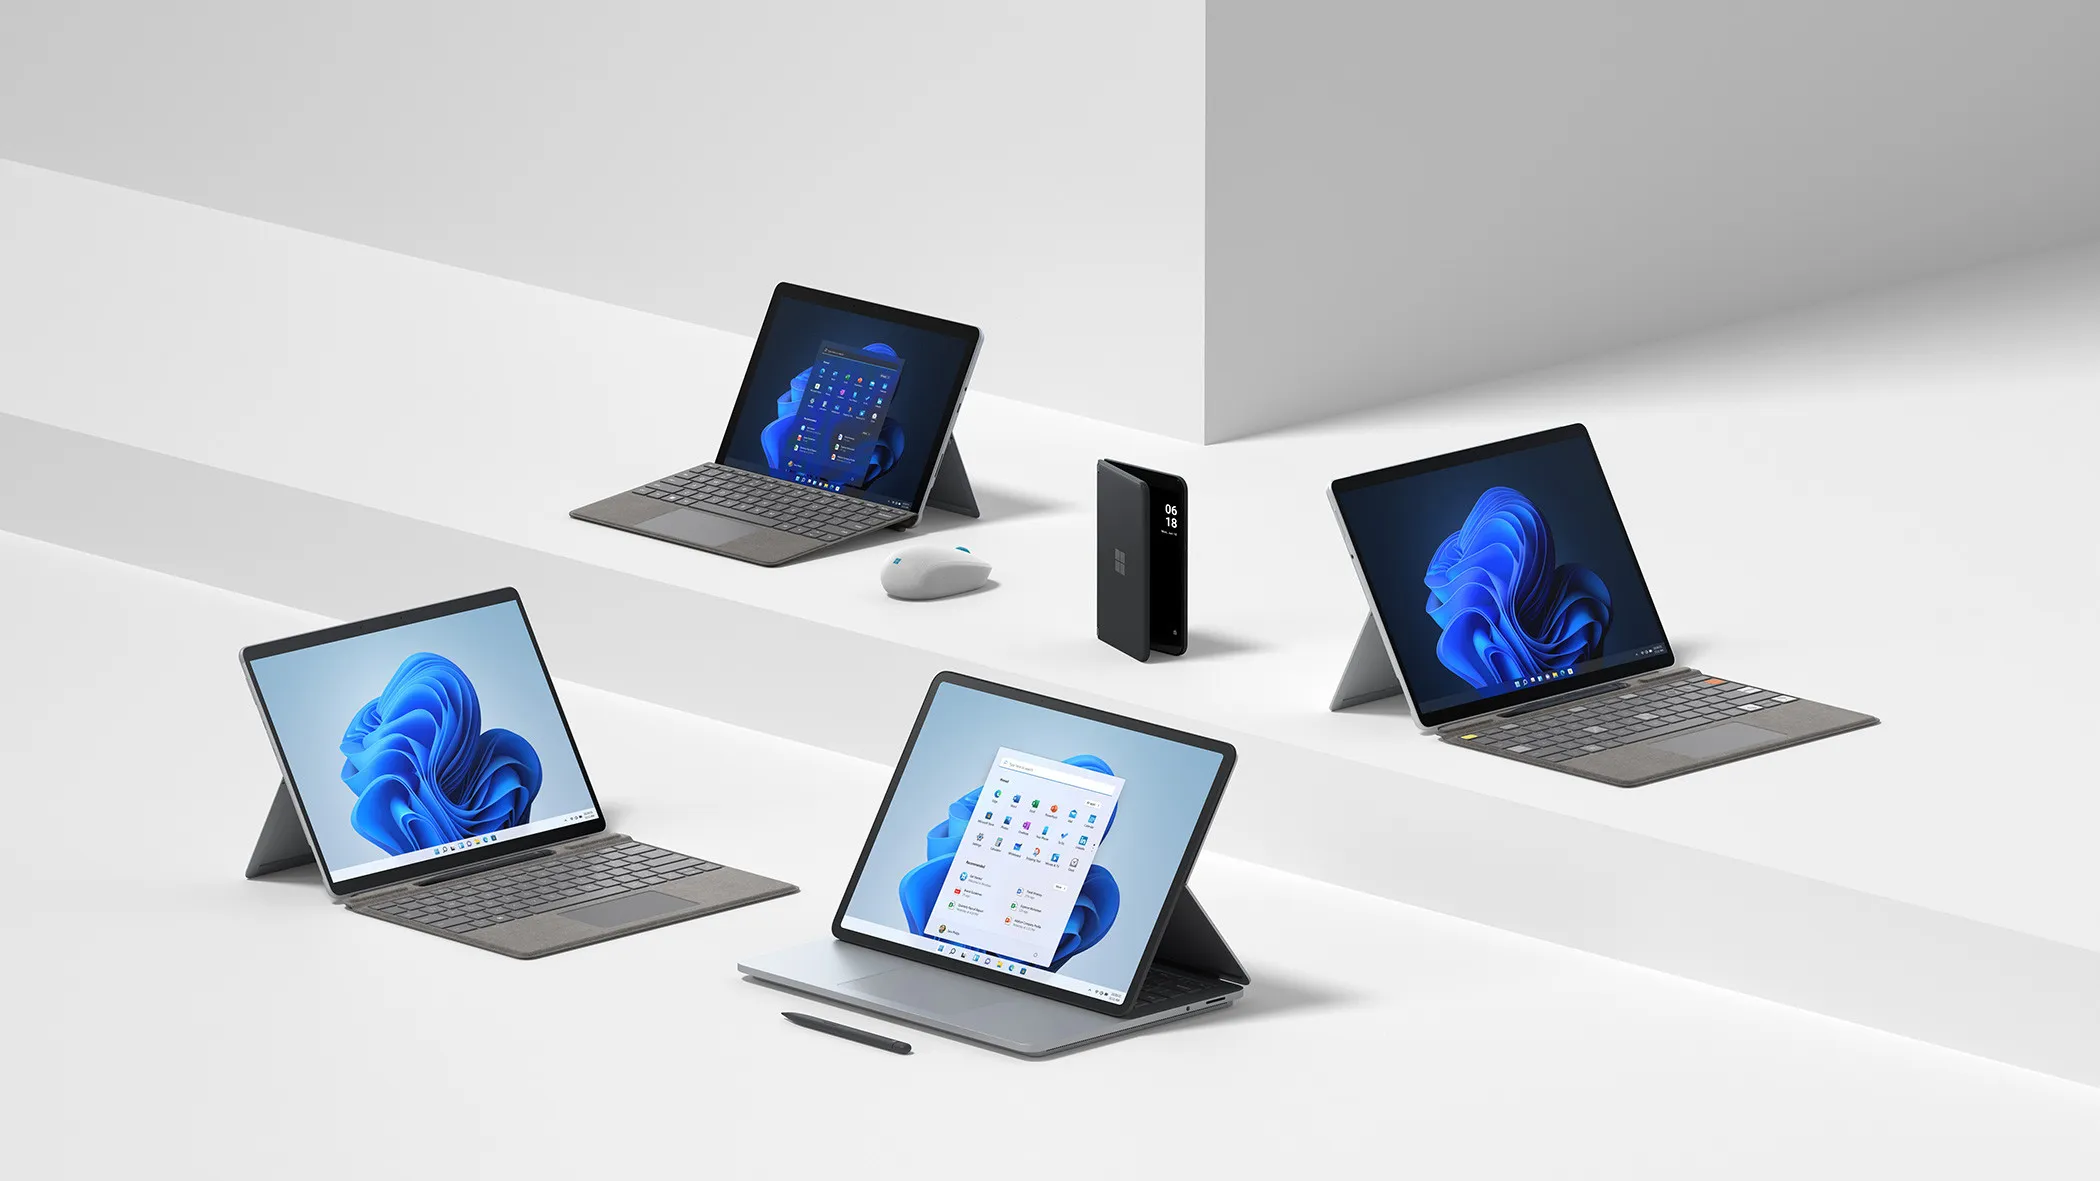 Dispositivos Surface Pro 8 Laptop Studio Go 3 Pro X y Duo 2 colocados en un fondo blanco